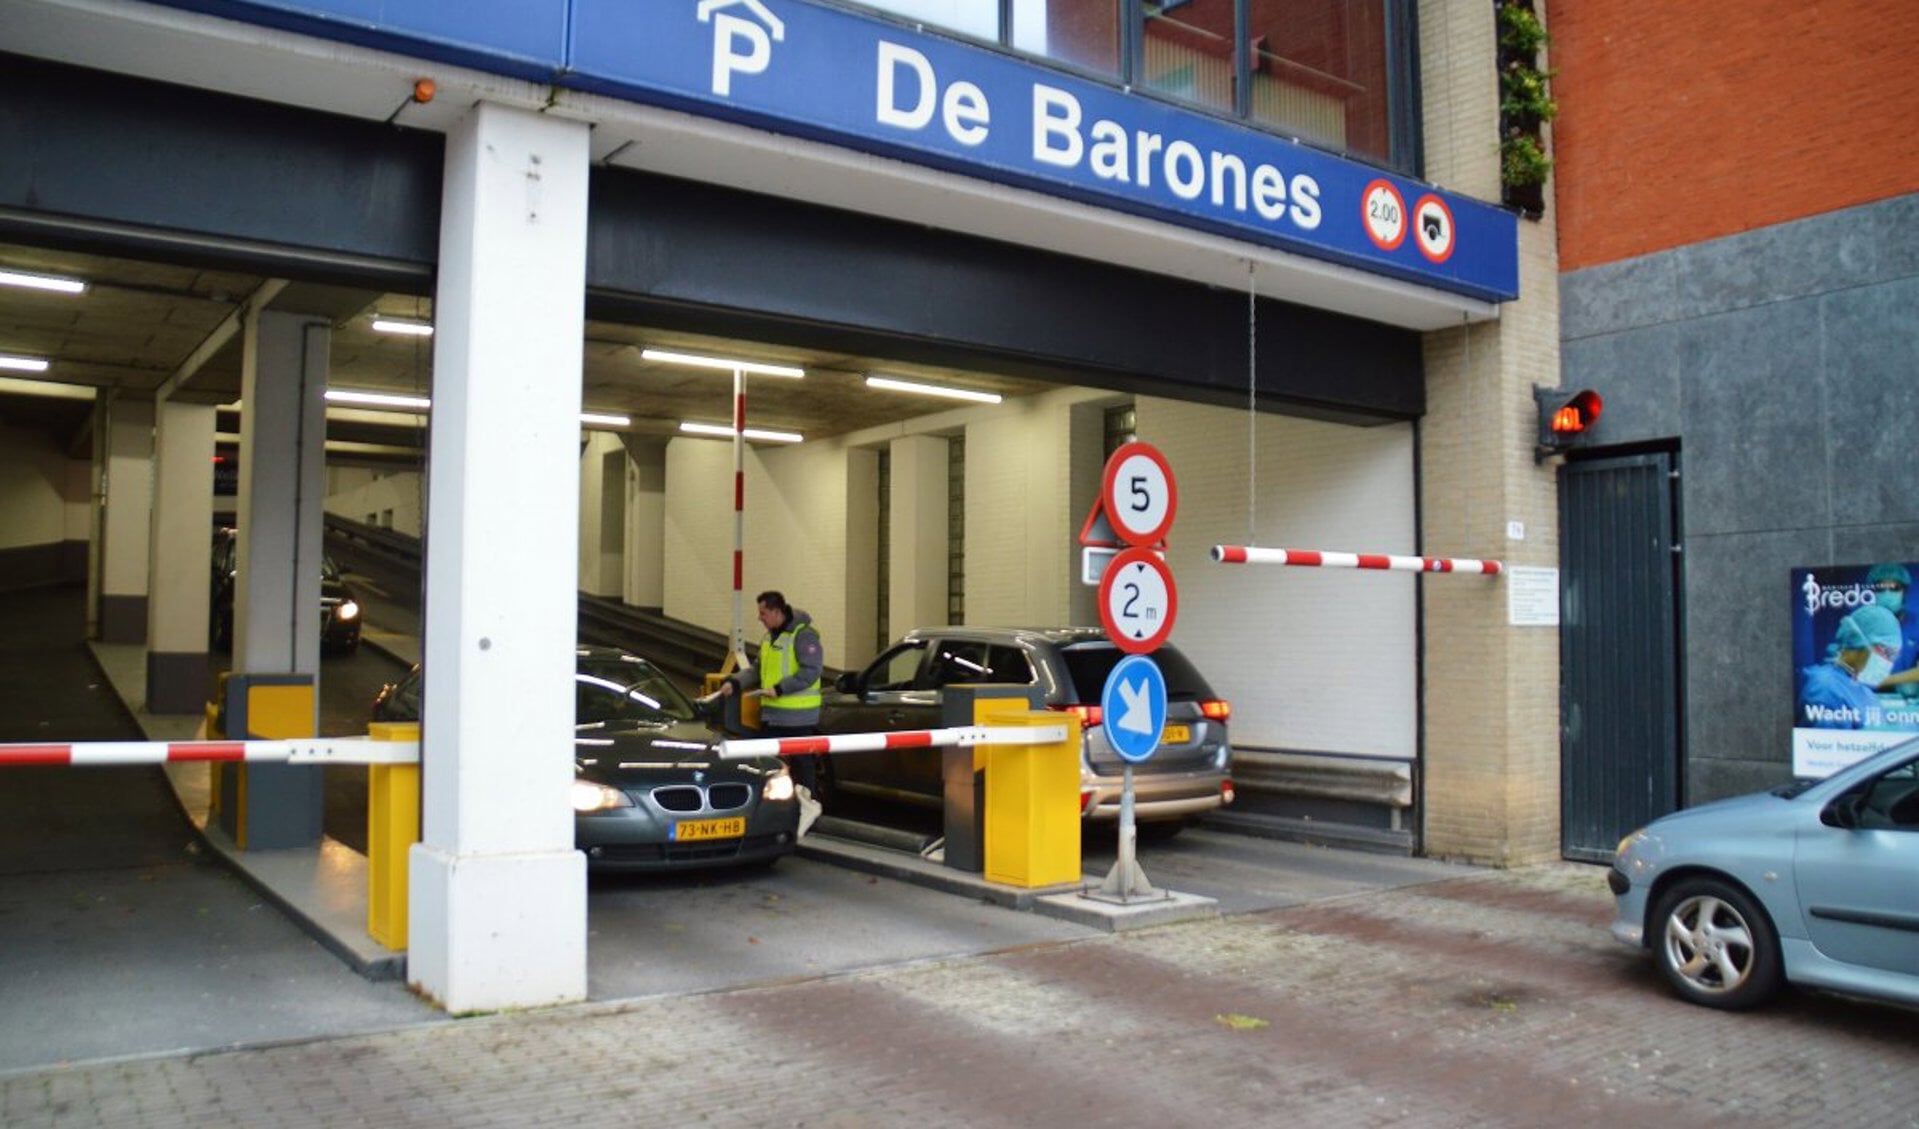 Medewerker Roy van Parkeerbedrijf Breda deelt ‘groeimatjes’ uit aan de bezoekers van parkeergarage De Barones.